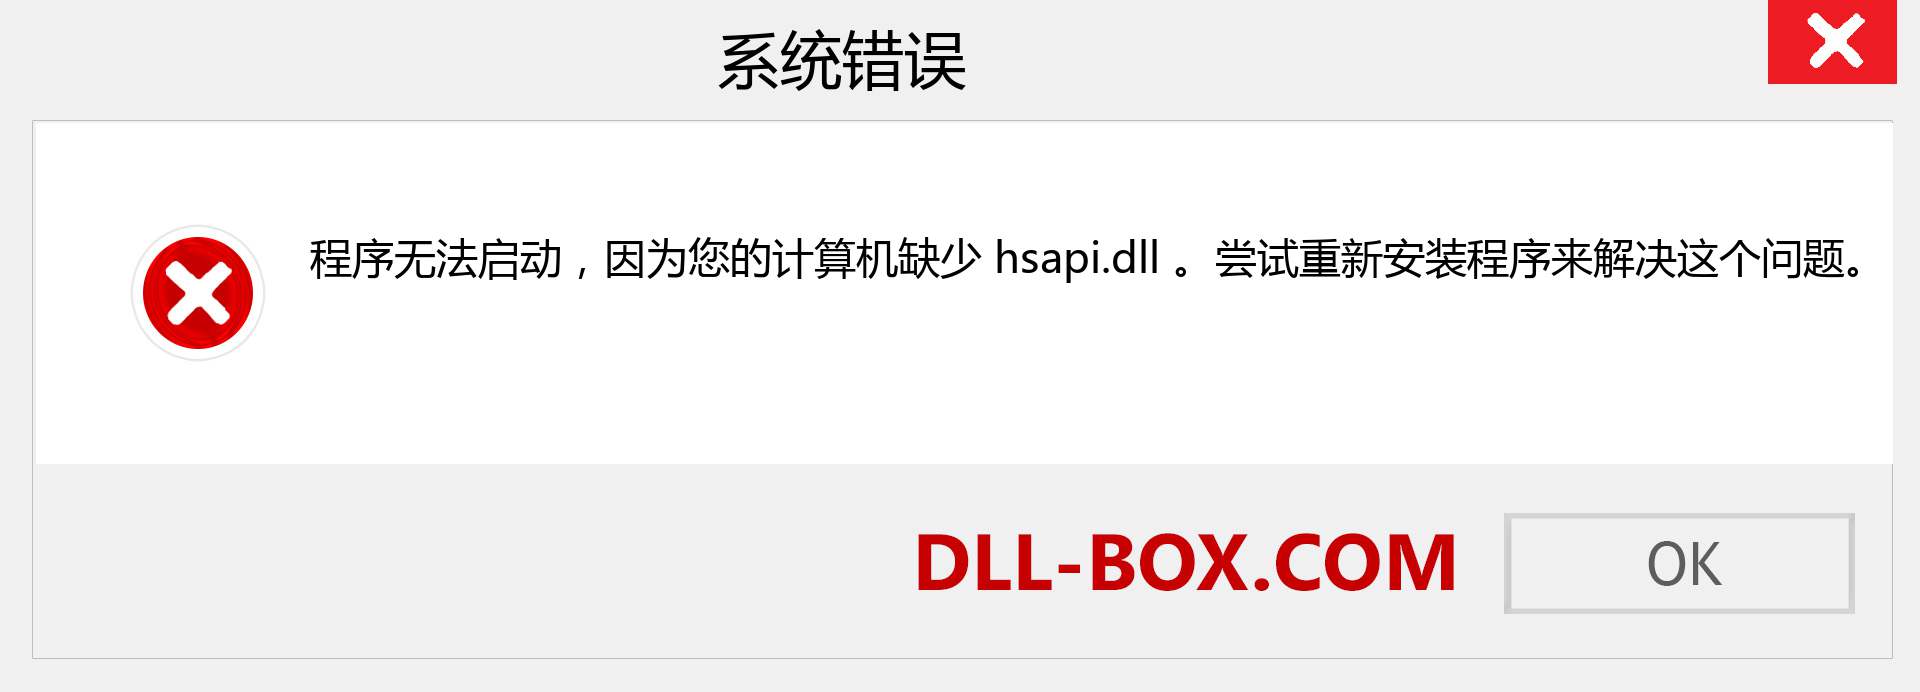 hsapi.dll 文件丢失？。 适用于 Windows 7、8、10 的下载 - 修复 Windows、照片、图像上的 hsapi dll 丢失错误